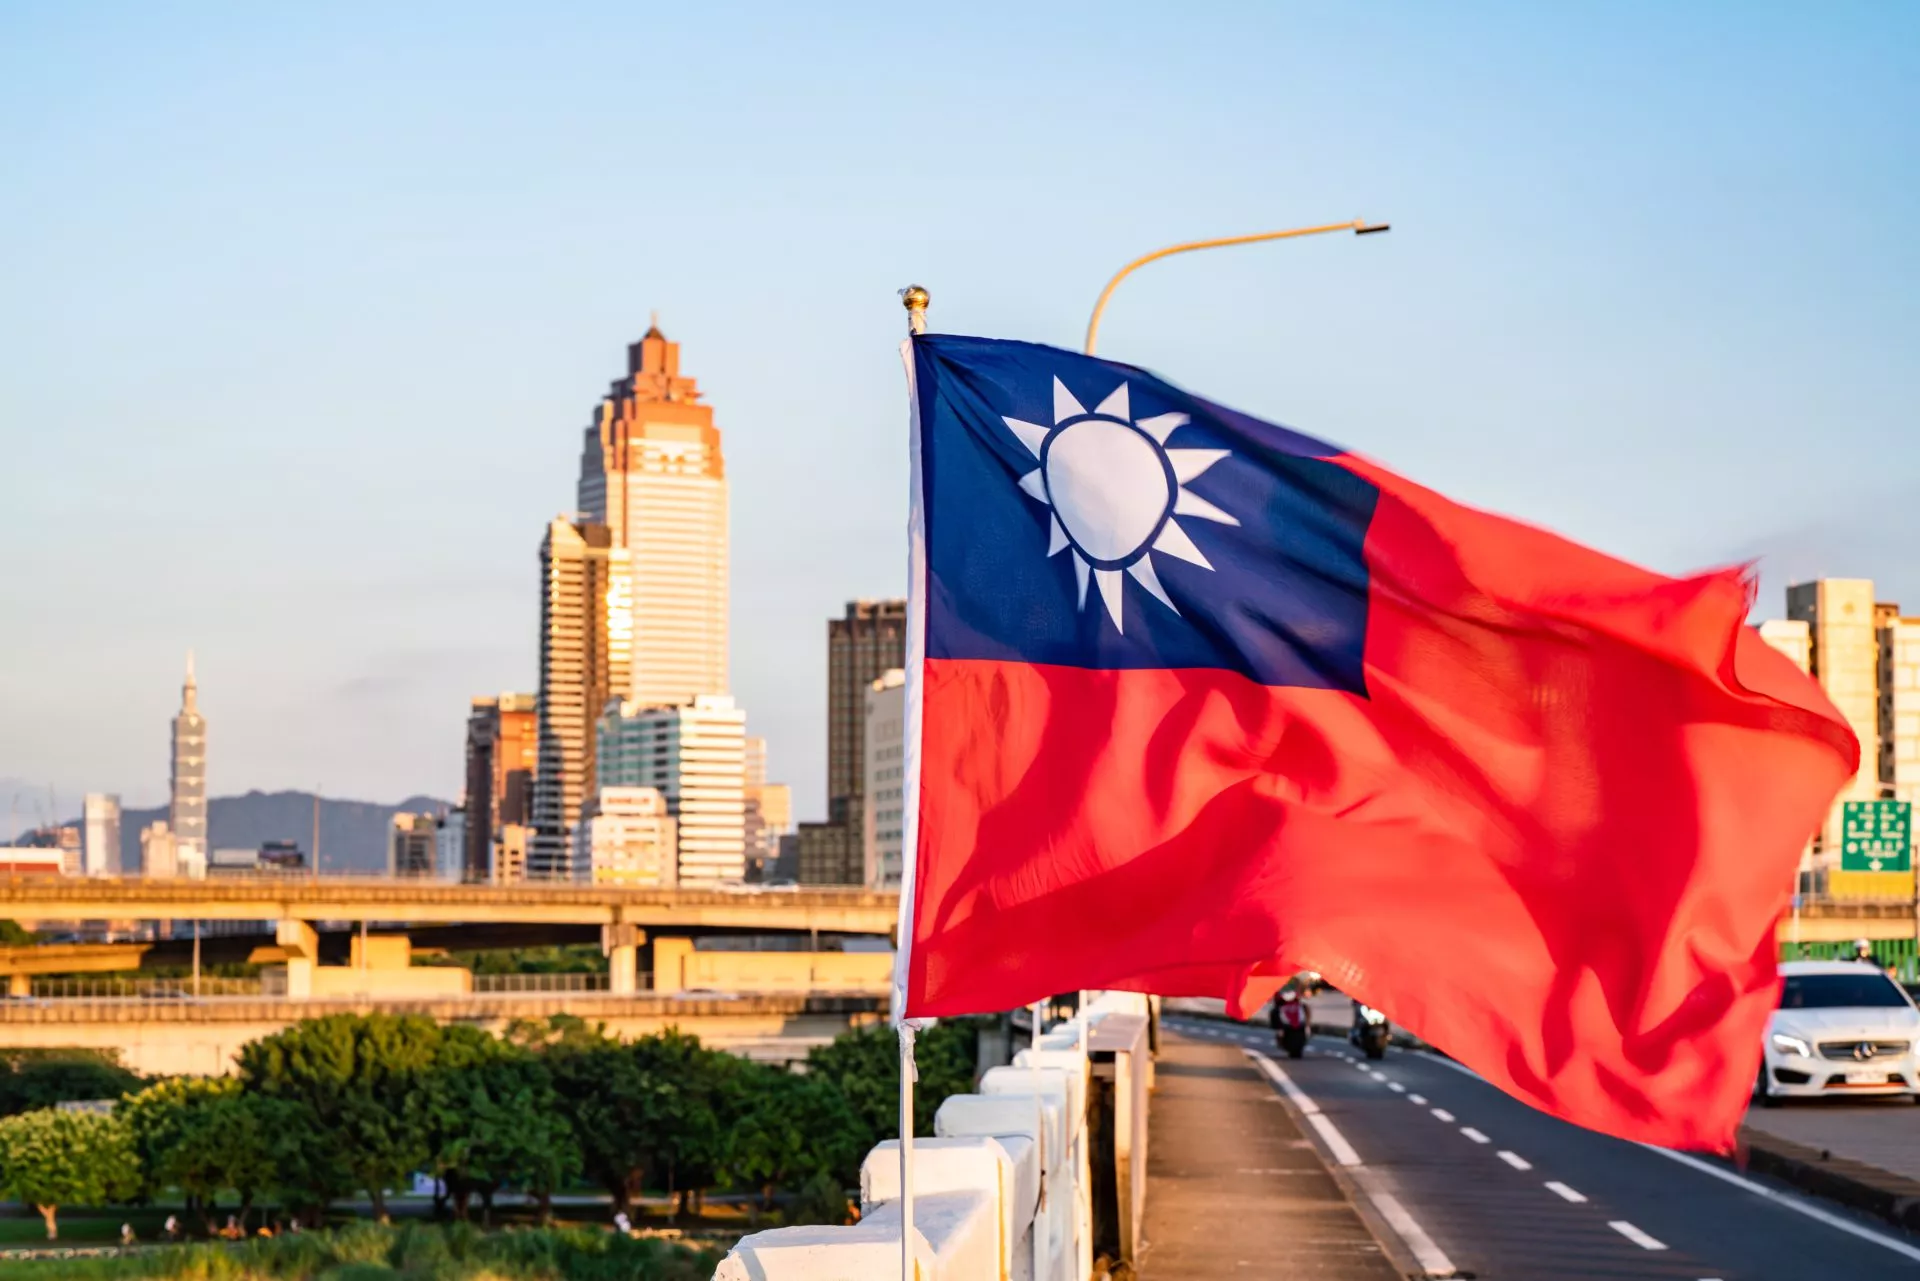 Taiwanese cryptobedrijven sluiten zich aan bij vereniging voor zelfregulering